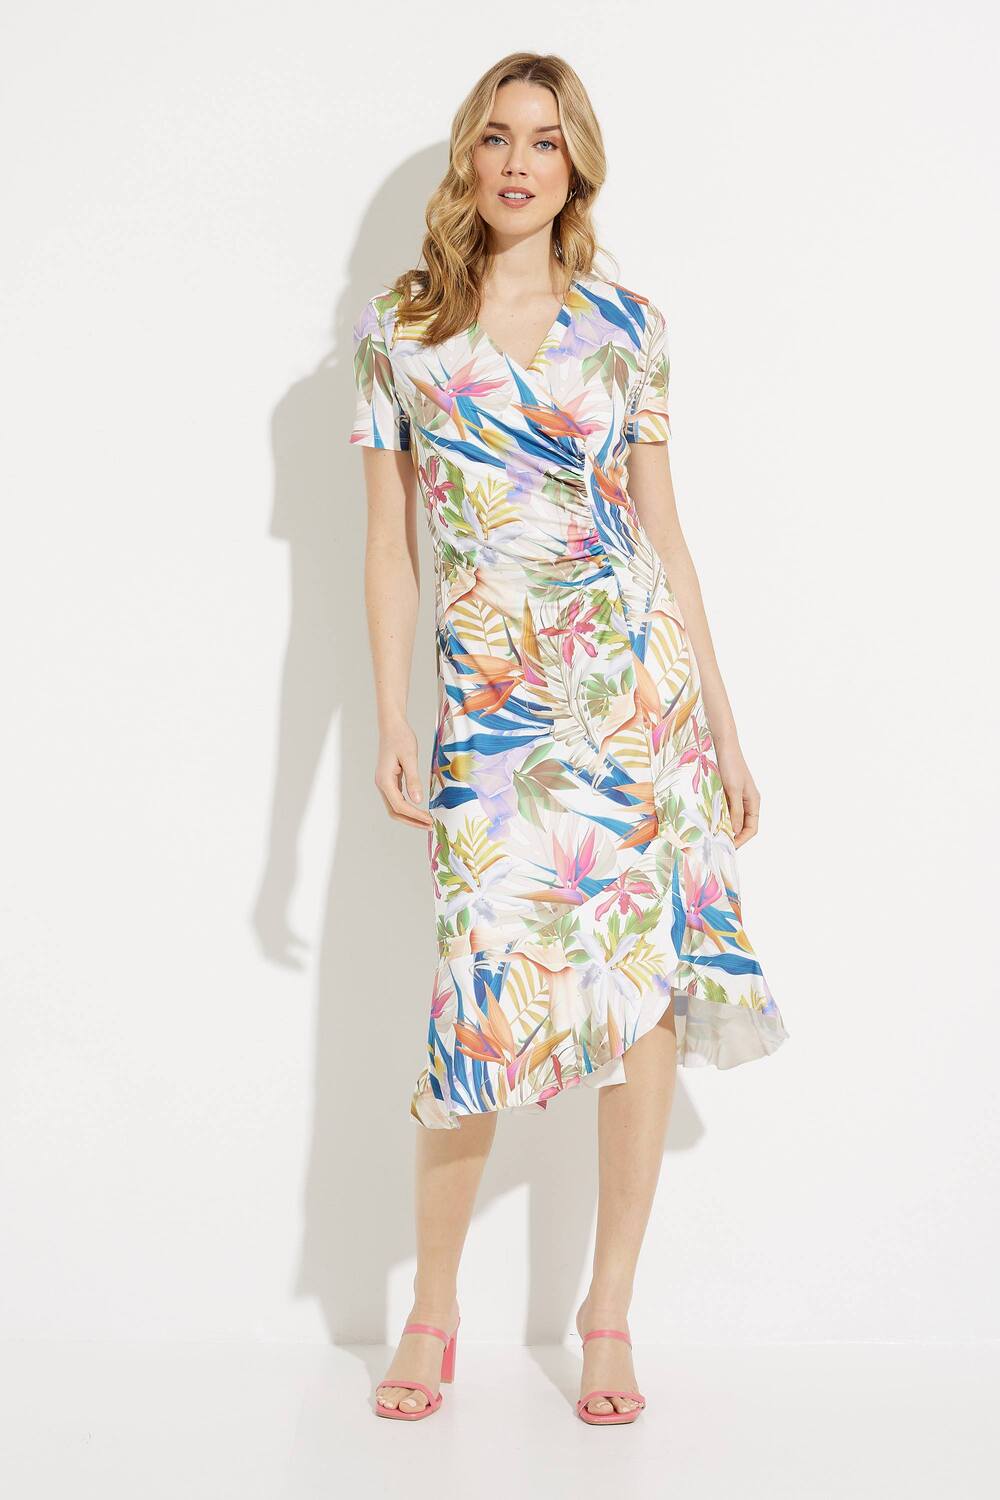 Palm Print Wrap Dress Style P23116. Multi